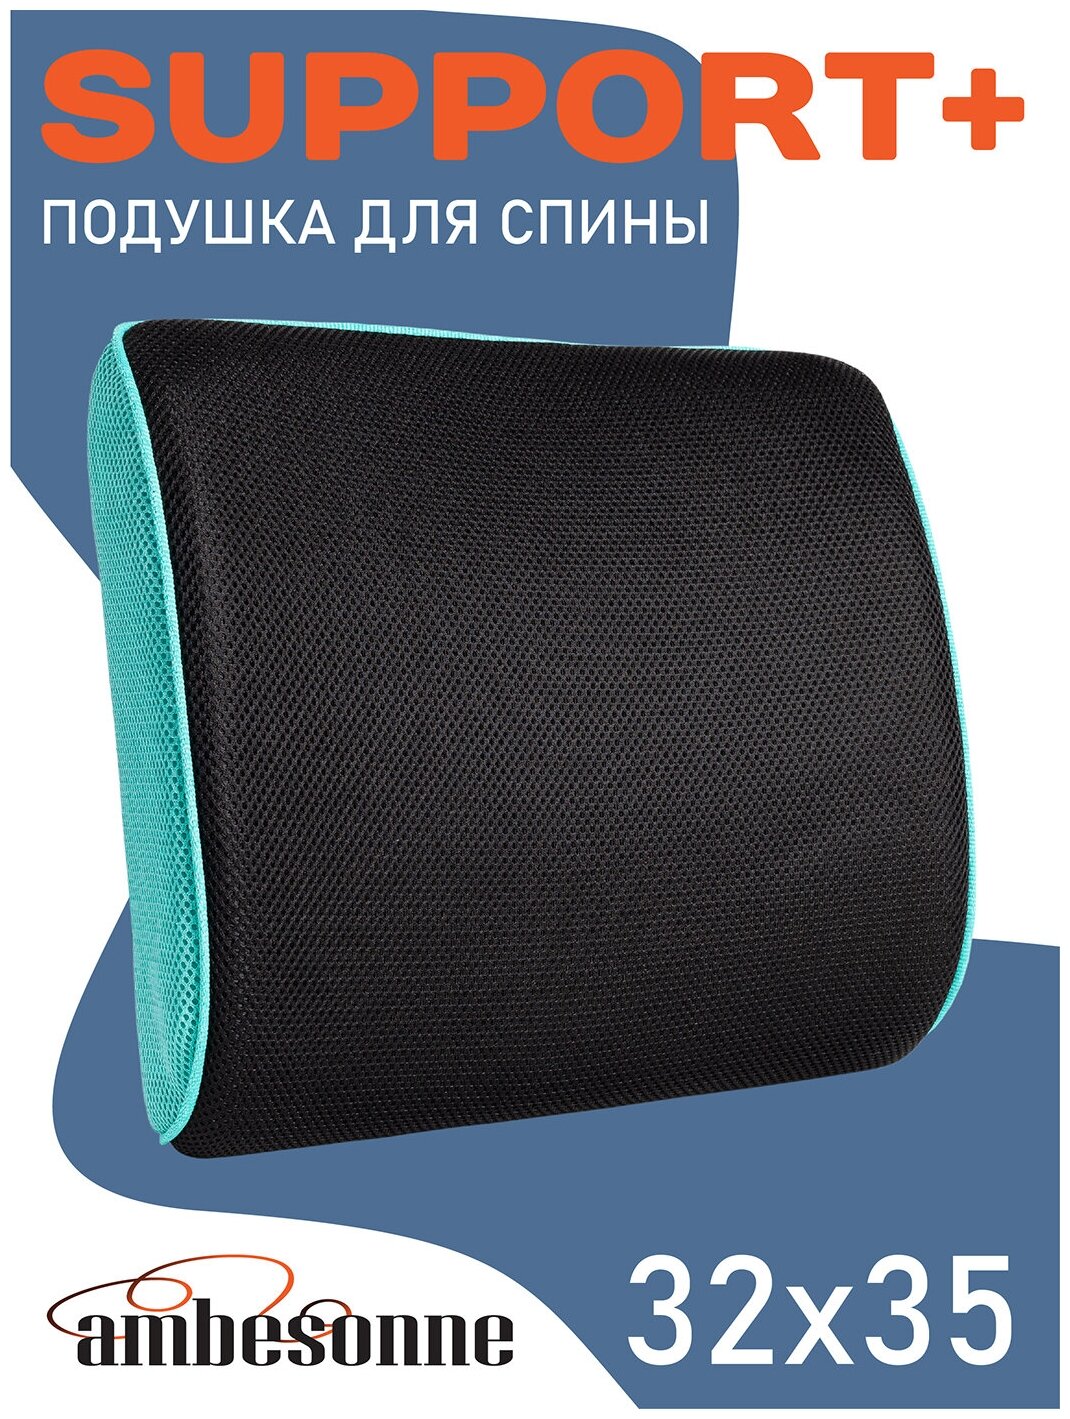 Ортопедическая подушка Ambesonne с эффектом памяти Memory Foam для спины под поясницу на стул, офисное кресло, в машину (автомобиль), 32x35 см